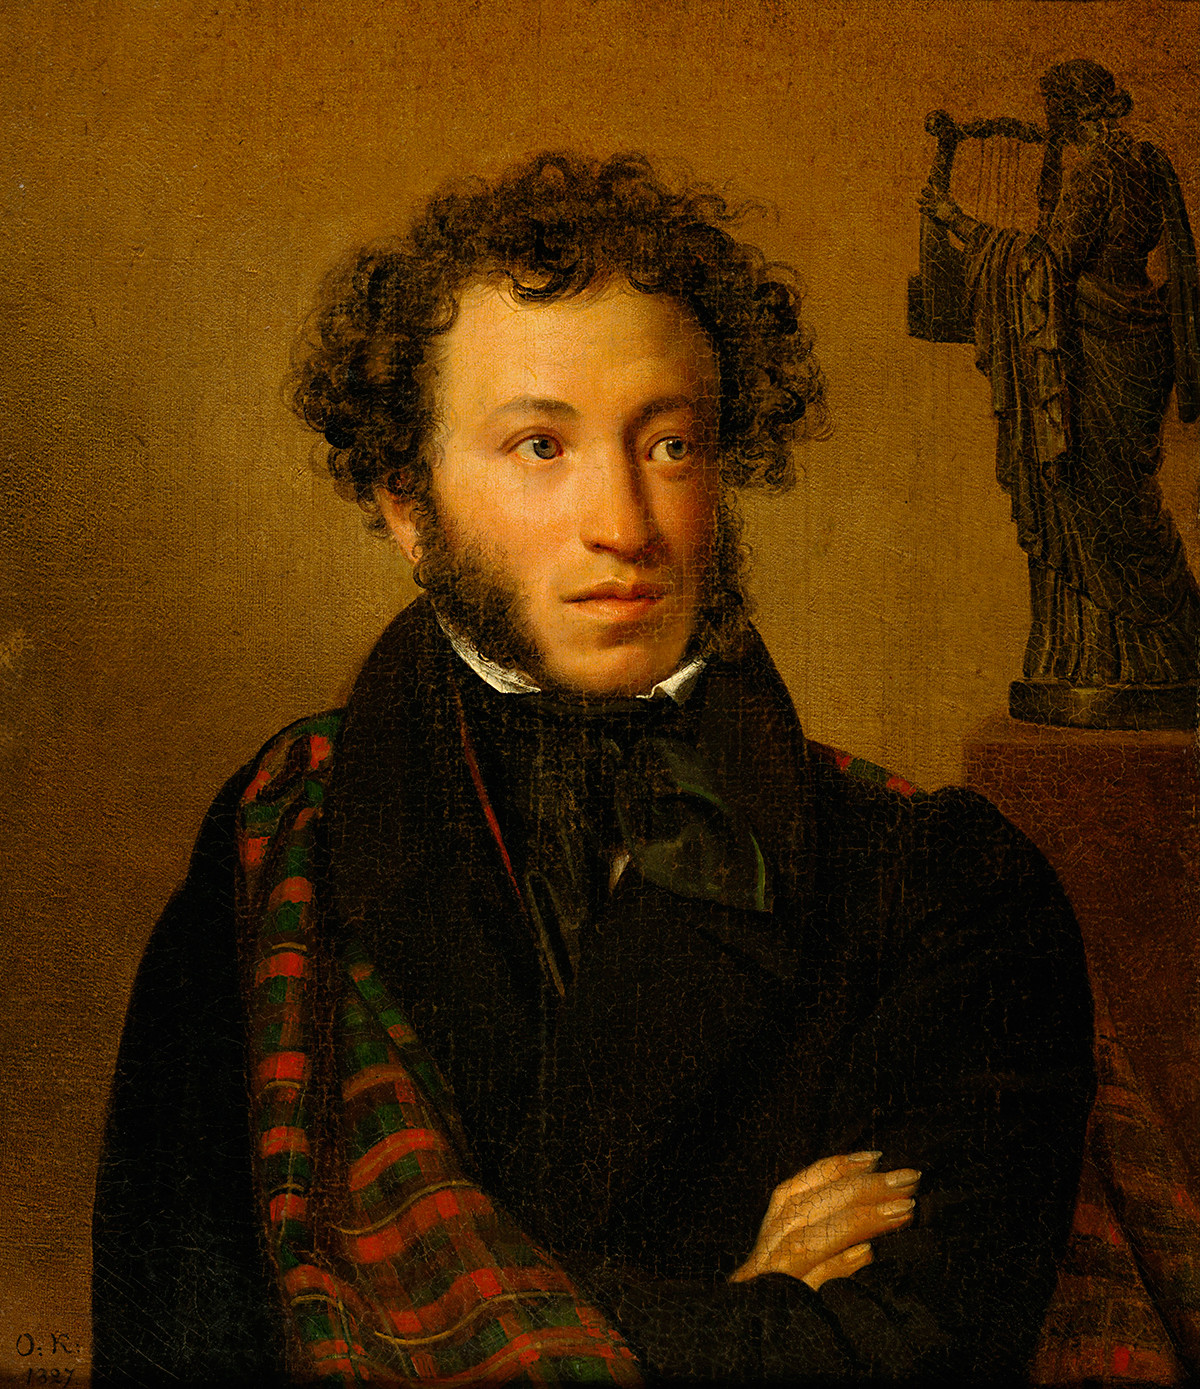 『アレクサンドル・プーシキンの肖像画』、オレスト・キプレンスキー作、1827年